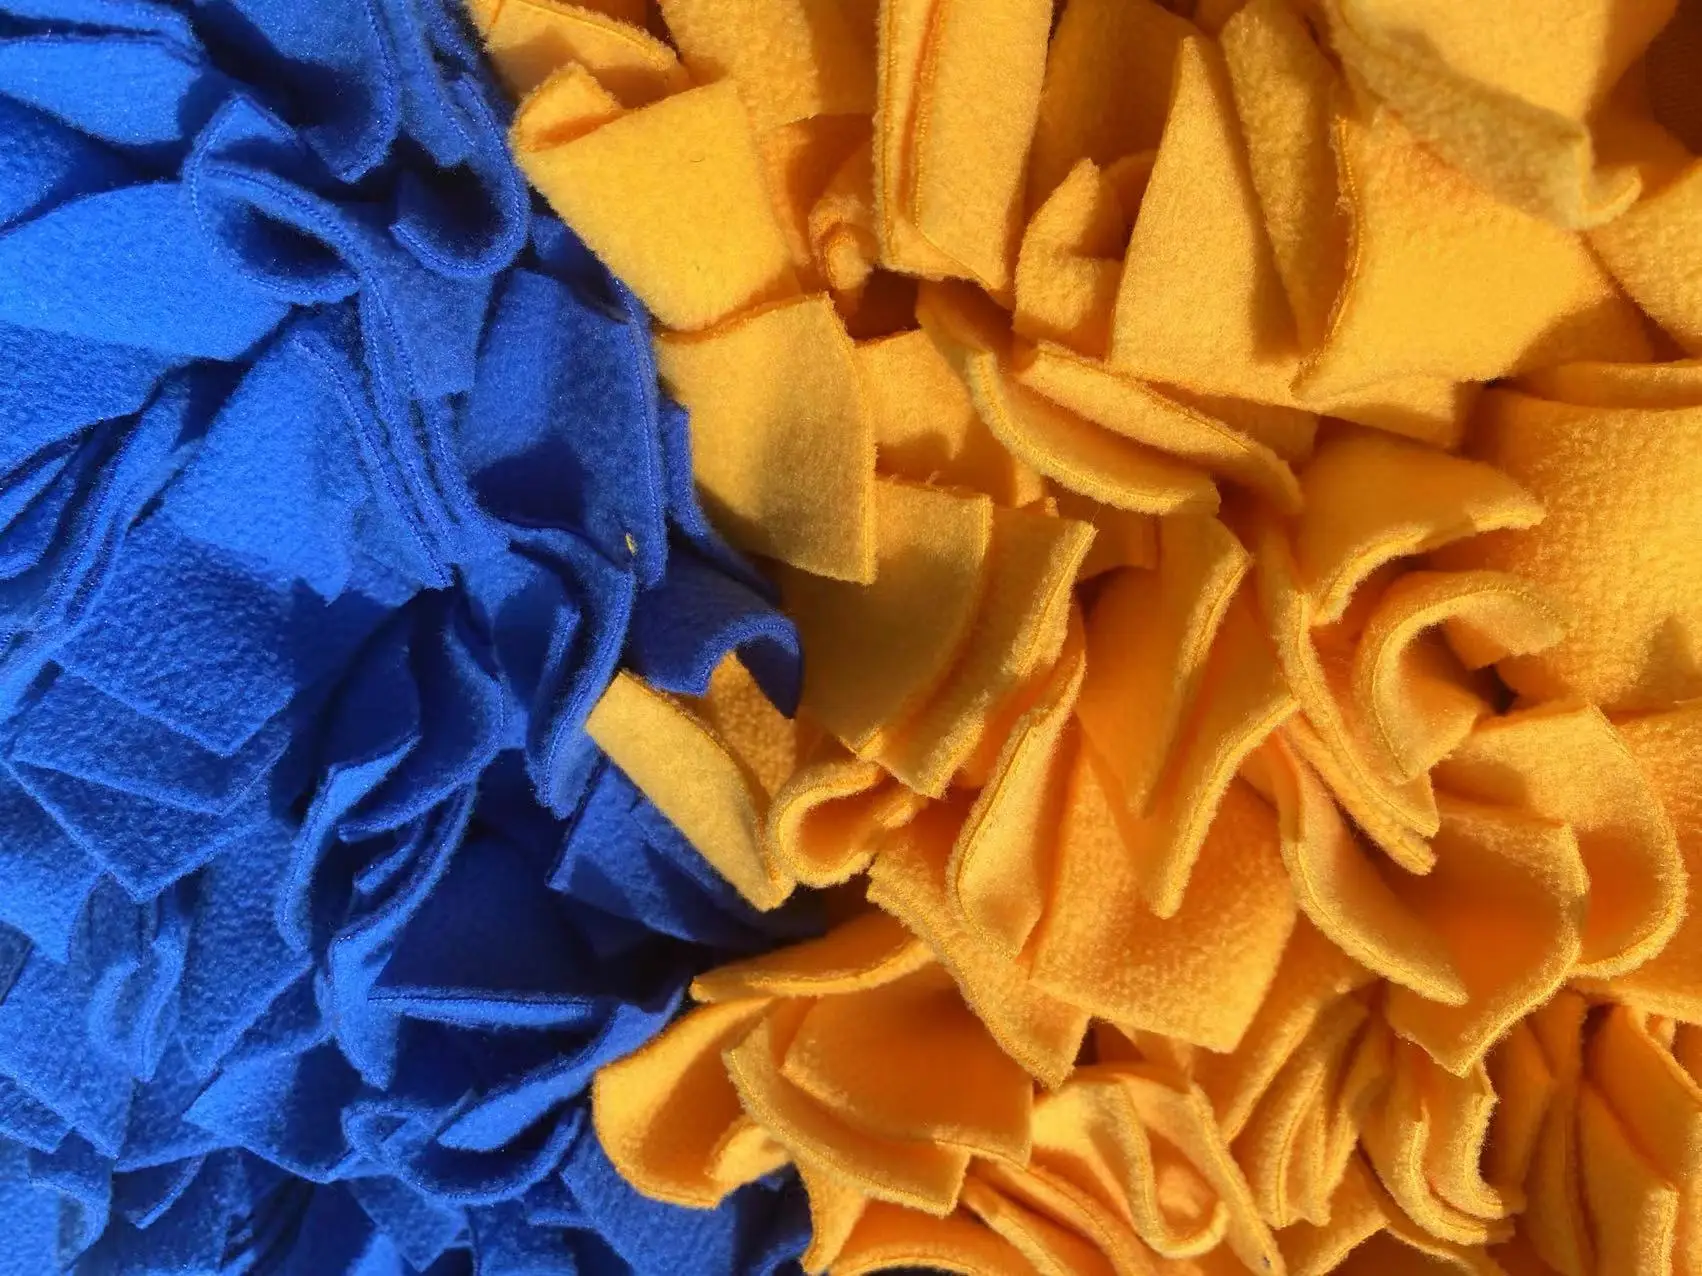 Синий и желтый, размер 45x60 см, сшитый из флиса, коврик для кормления крупных собак, коврик для нюхания собак крупных пород 5